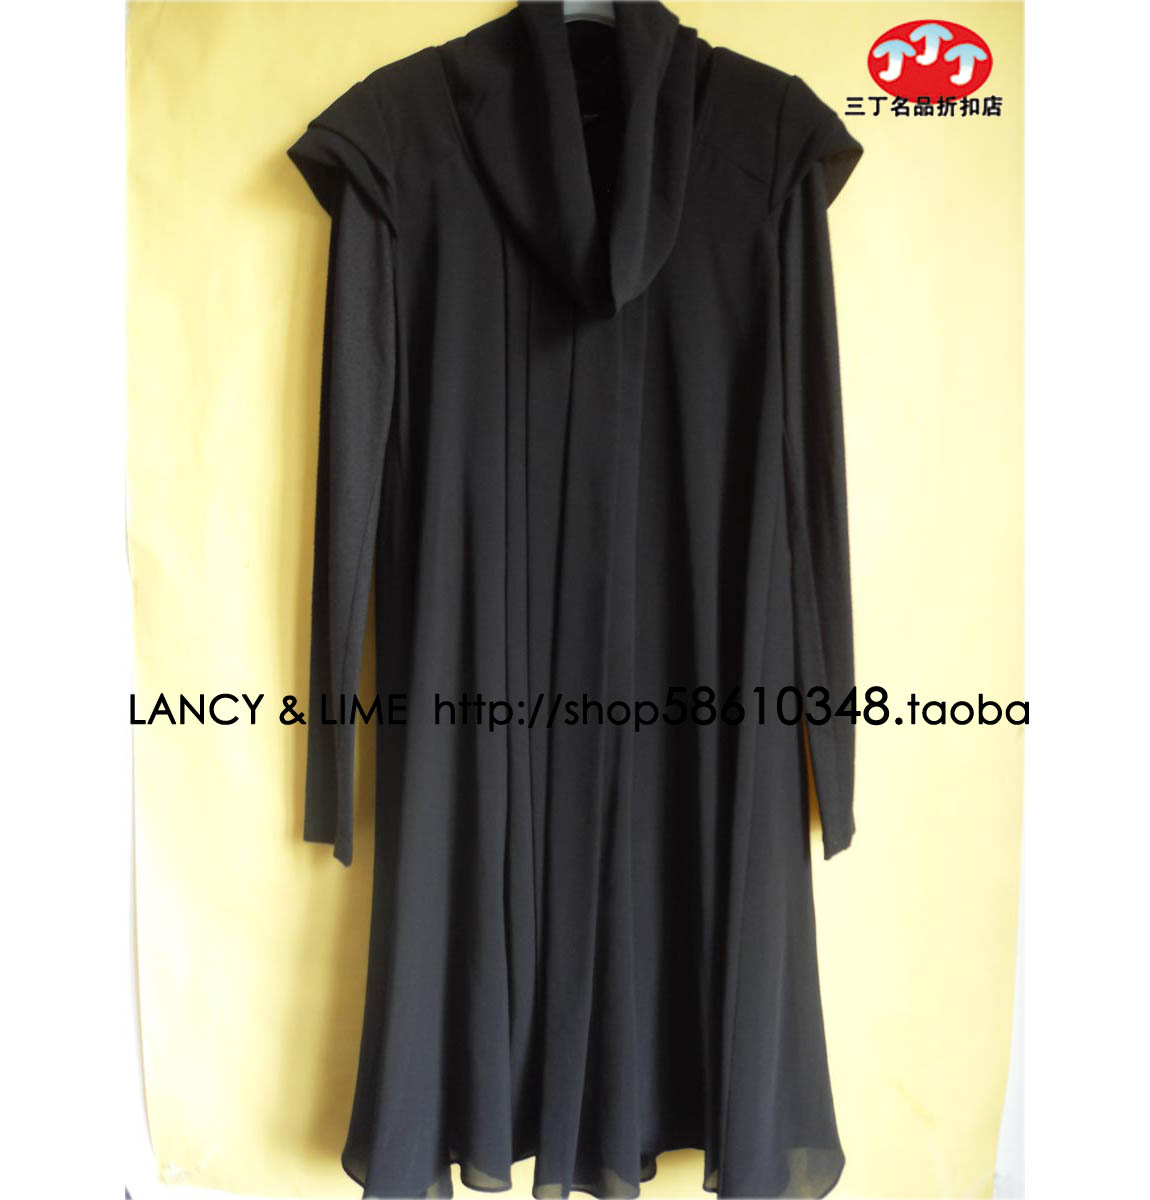 清仓特价【韩国莱茵LIME专柜正品】L143黑色假两件长袖连衣裙